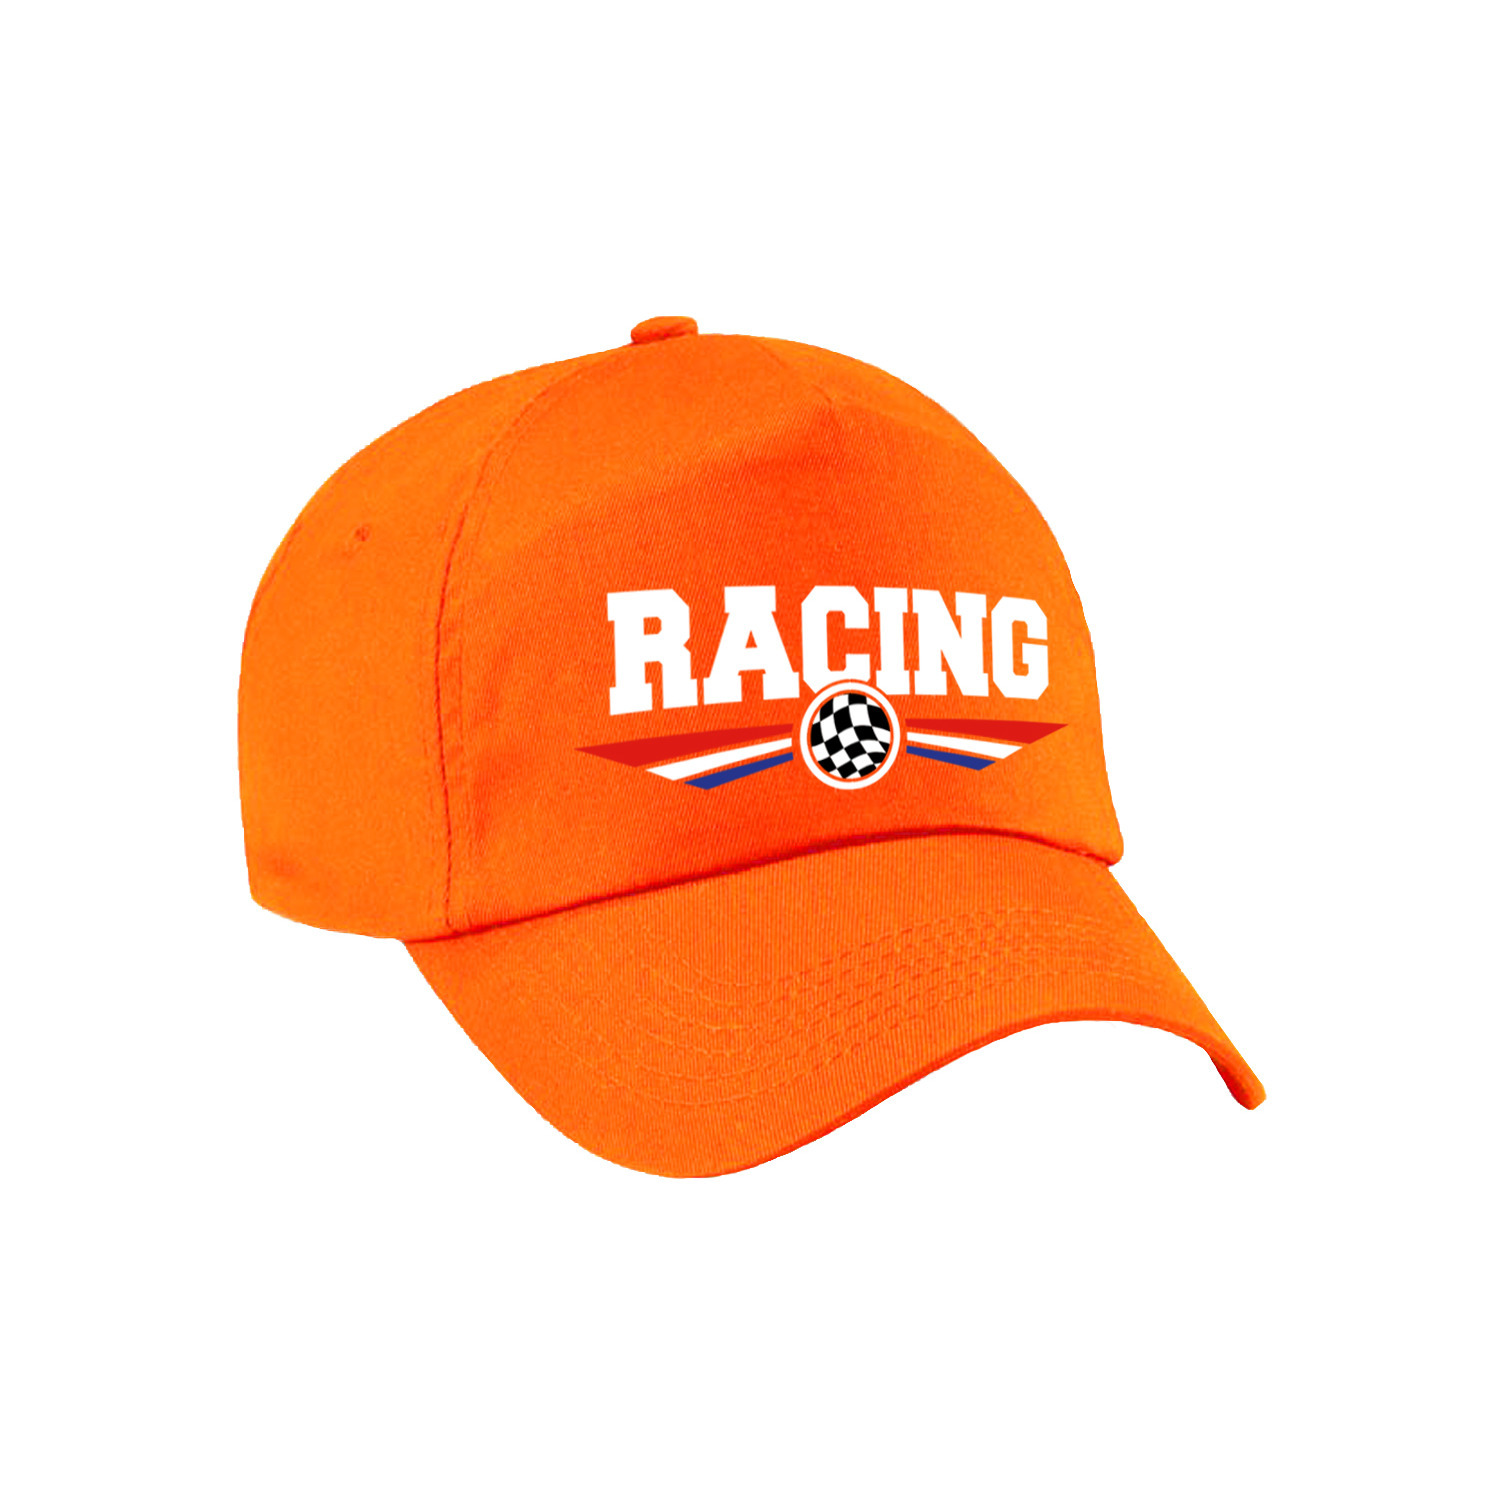 Racing coureur supporter pet / baseball cap met Nederlandse vlag oranje voor kinderen